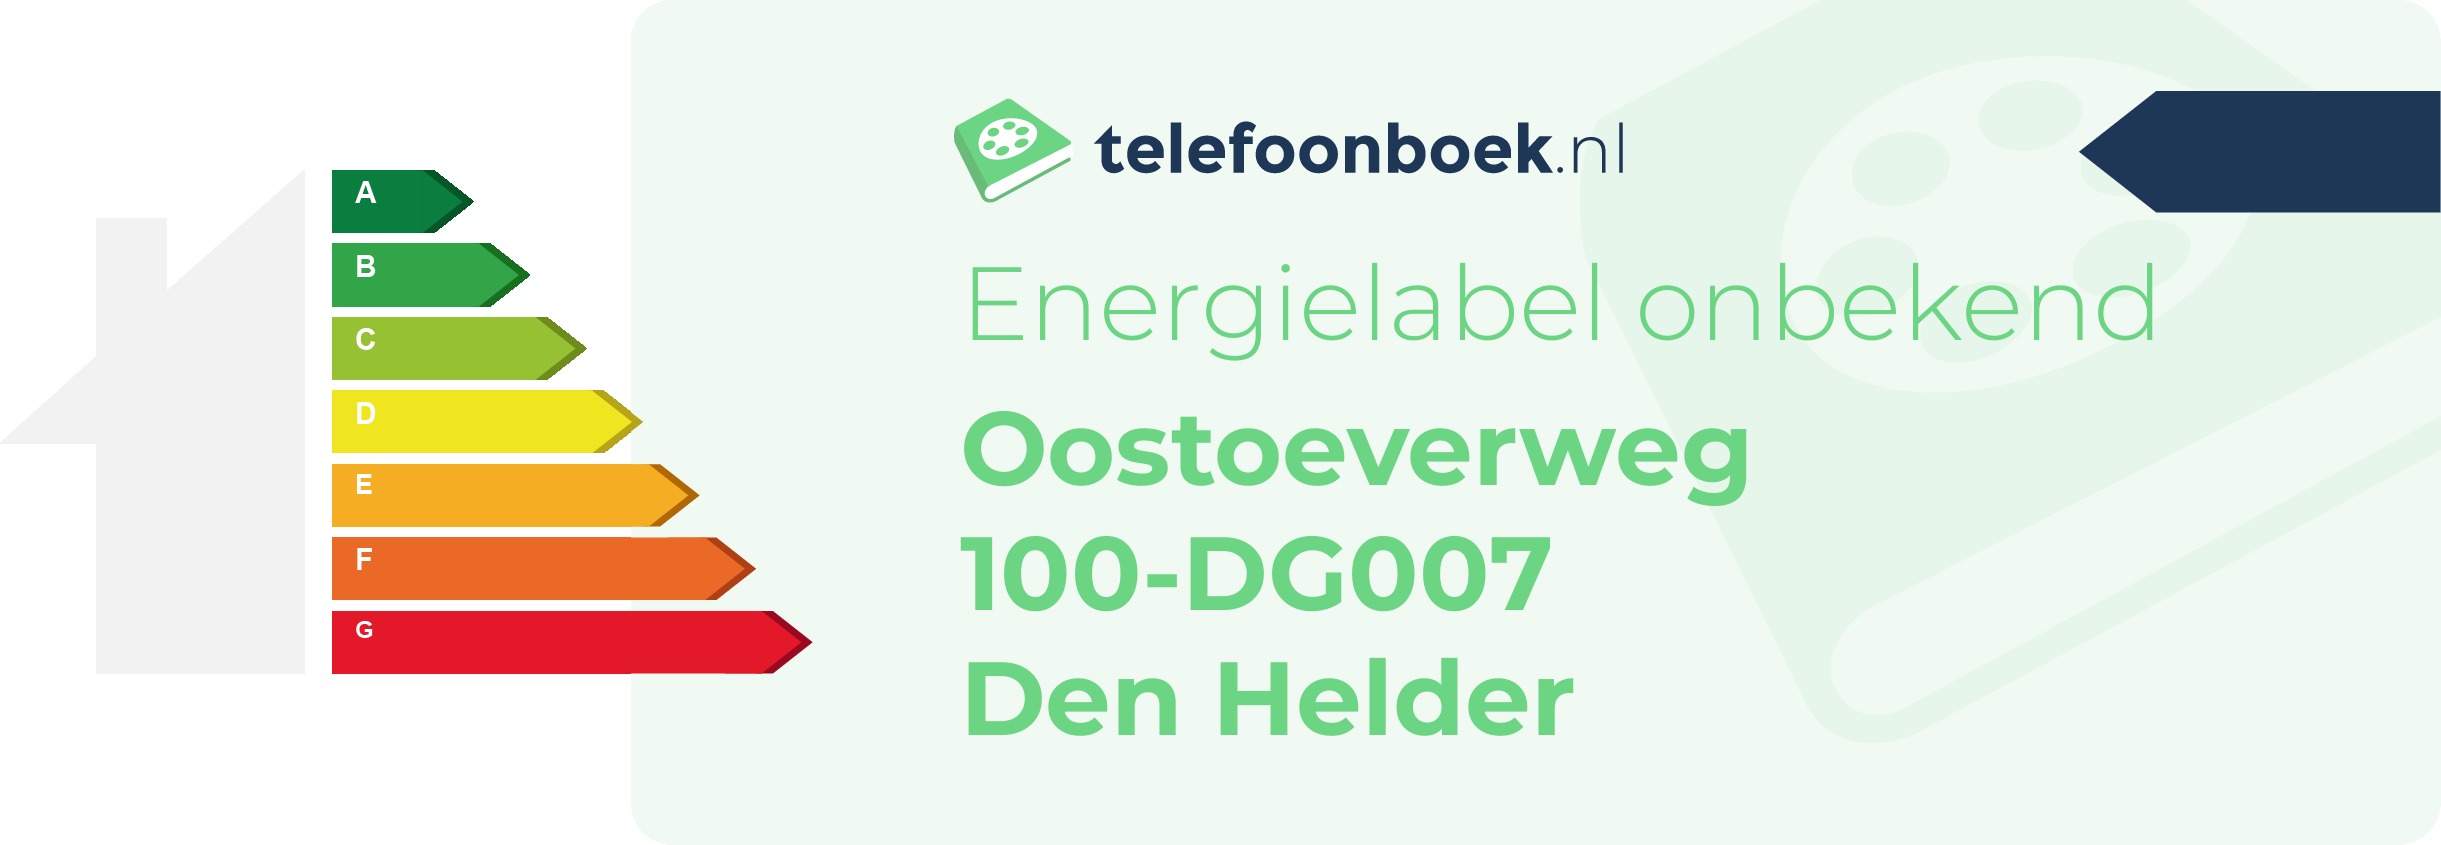 Energielabel Oostoeverweg 100-DG007 Den Helder